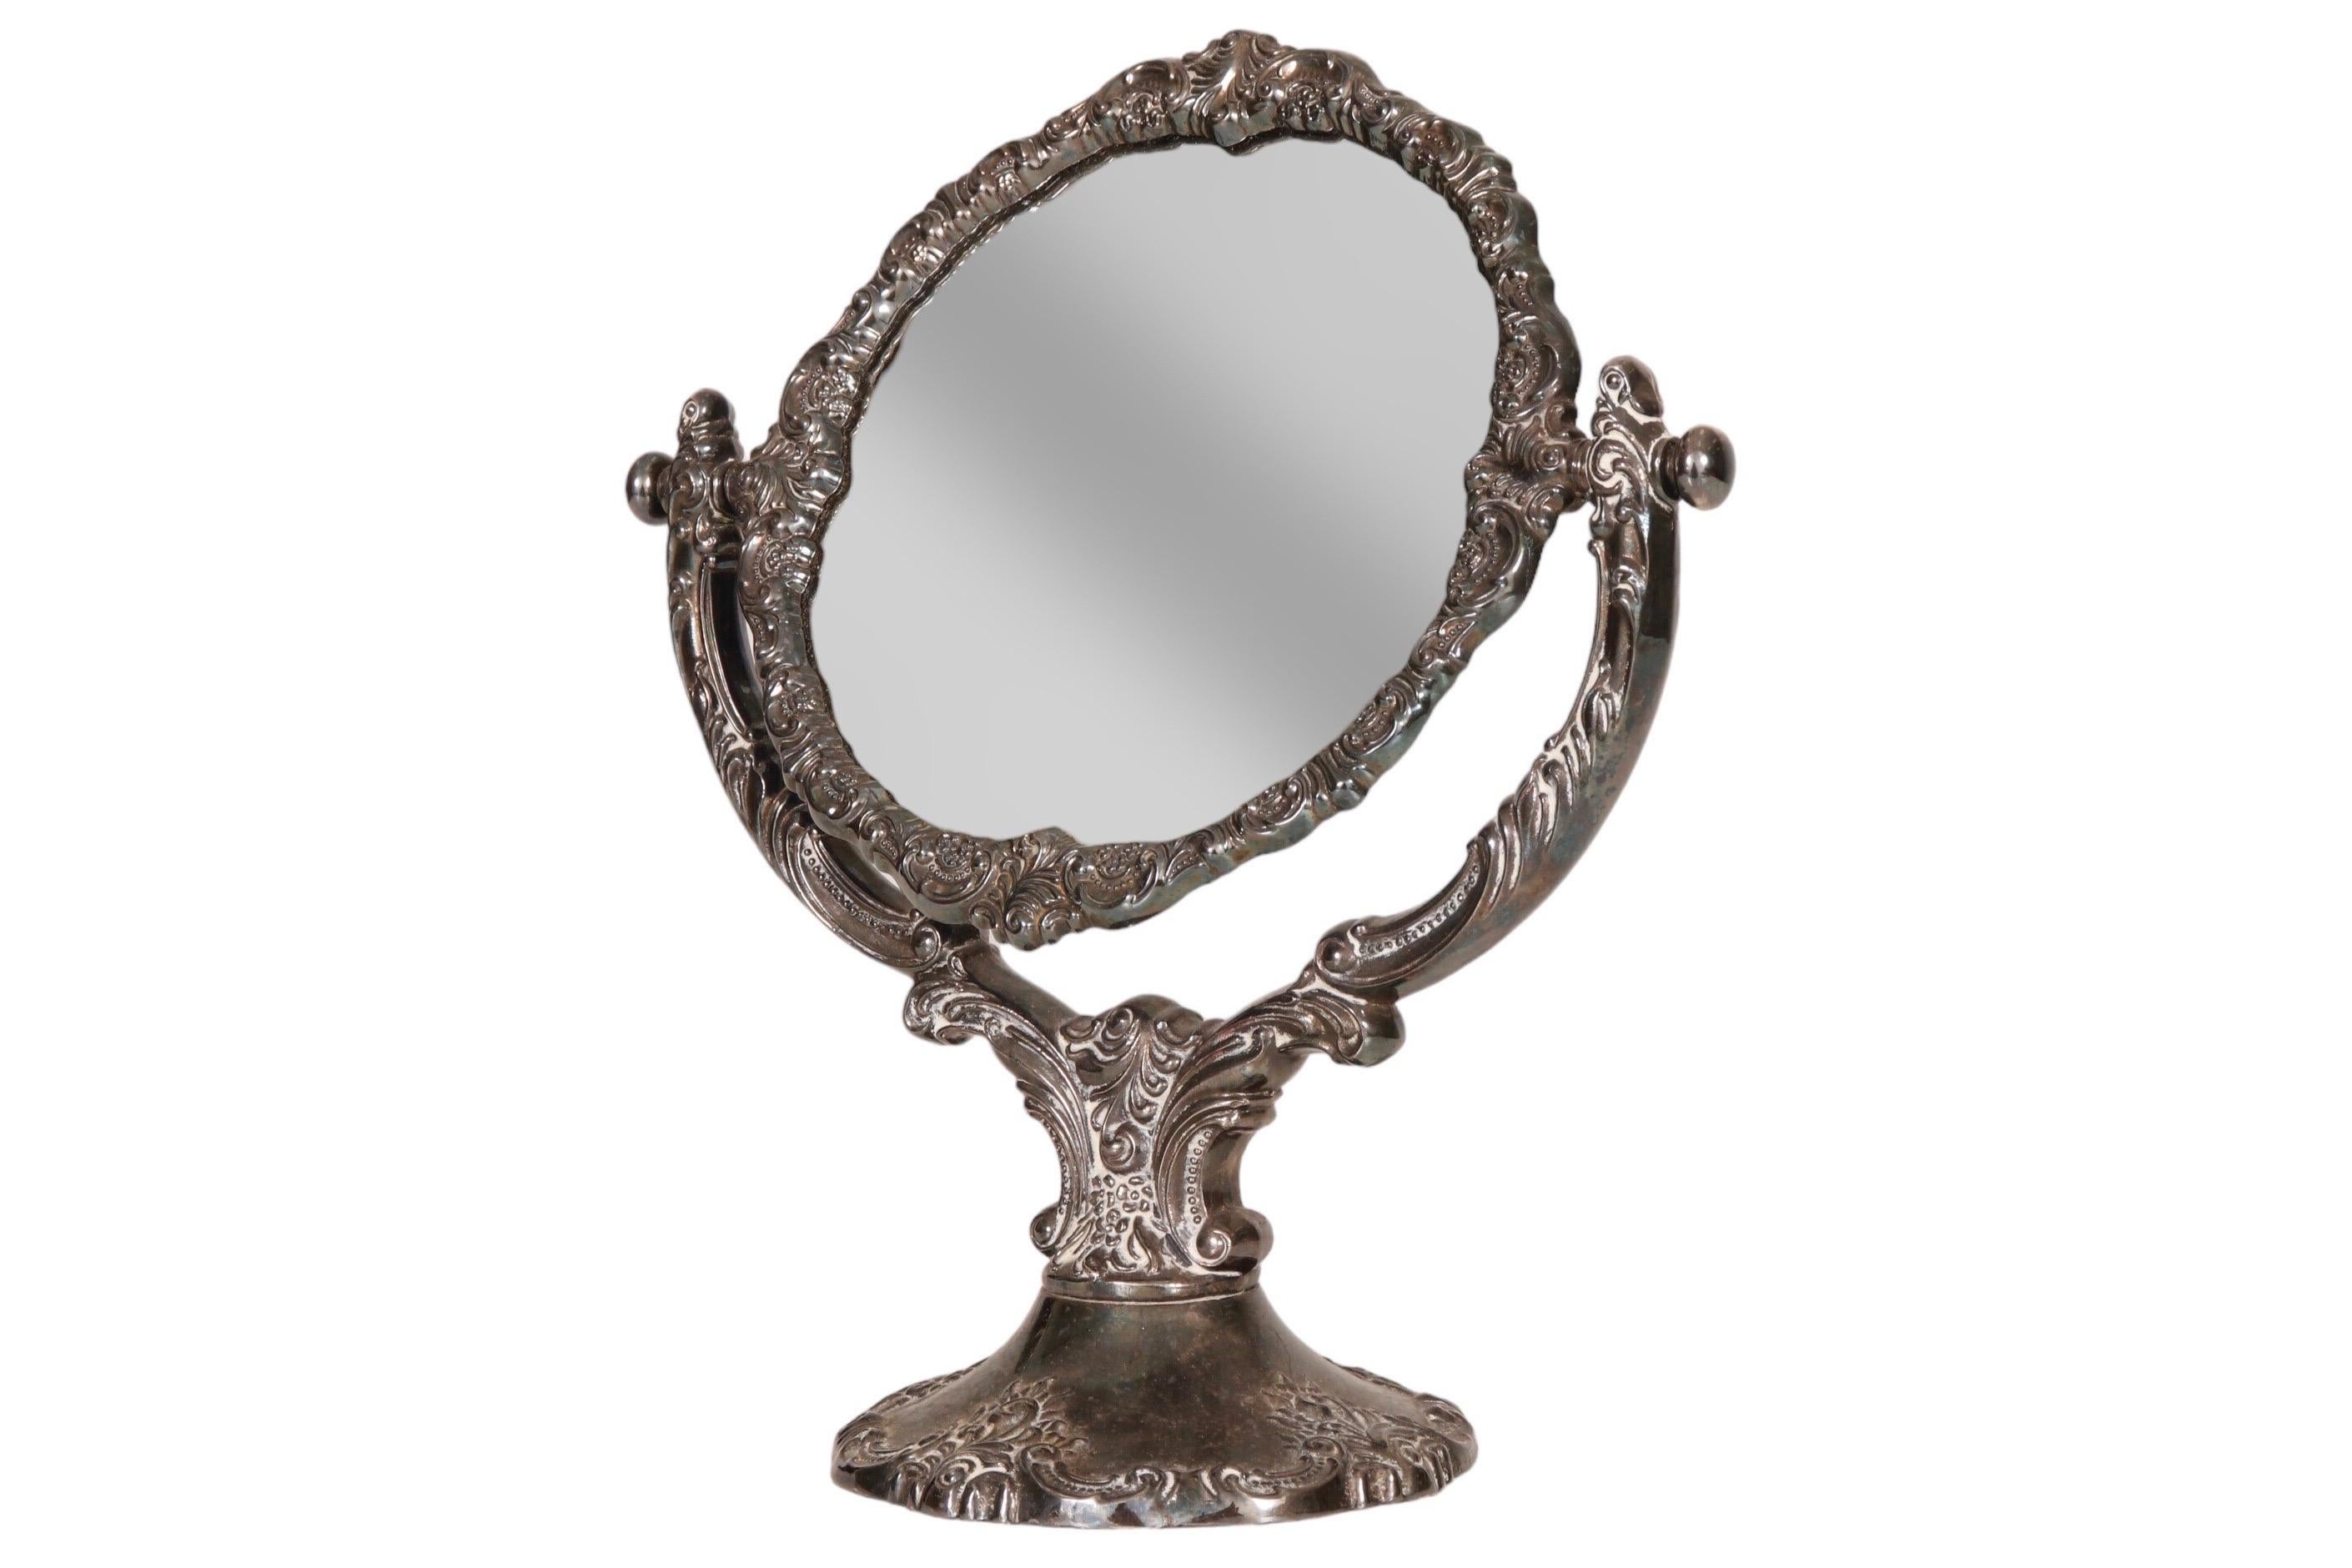 Versilberter Kosmetikspiegel im Barockstil von Wallace aus den 1940er Jahren. Ein runder Spiegel ist in einen verstellbaren Rahmen eingefasst, der mit Schnörkeln, Federn und Perlen besetzt ist. Die Rückseite ist mit blauem Samt bezogen.